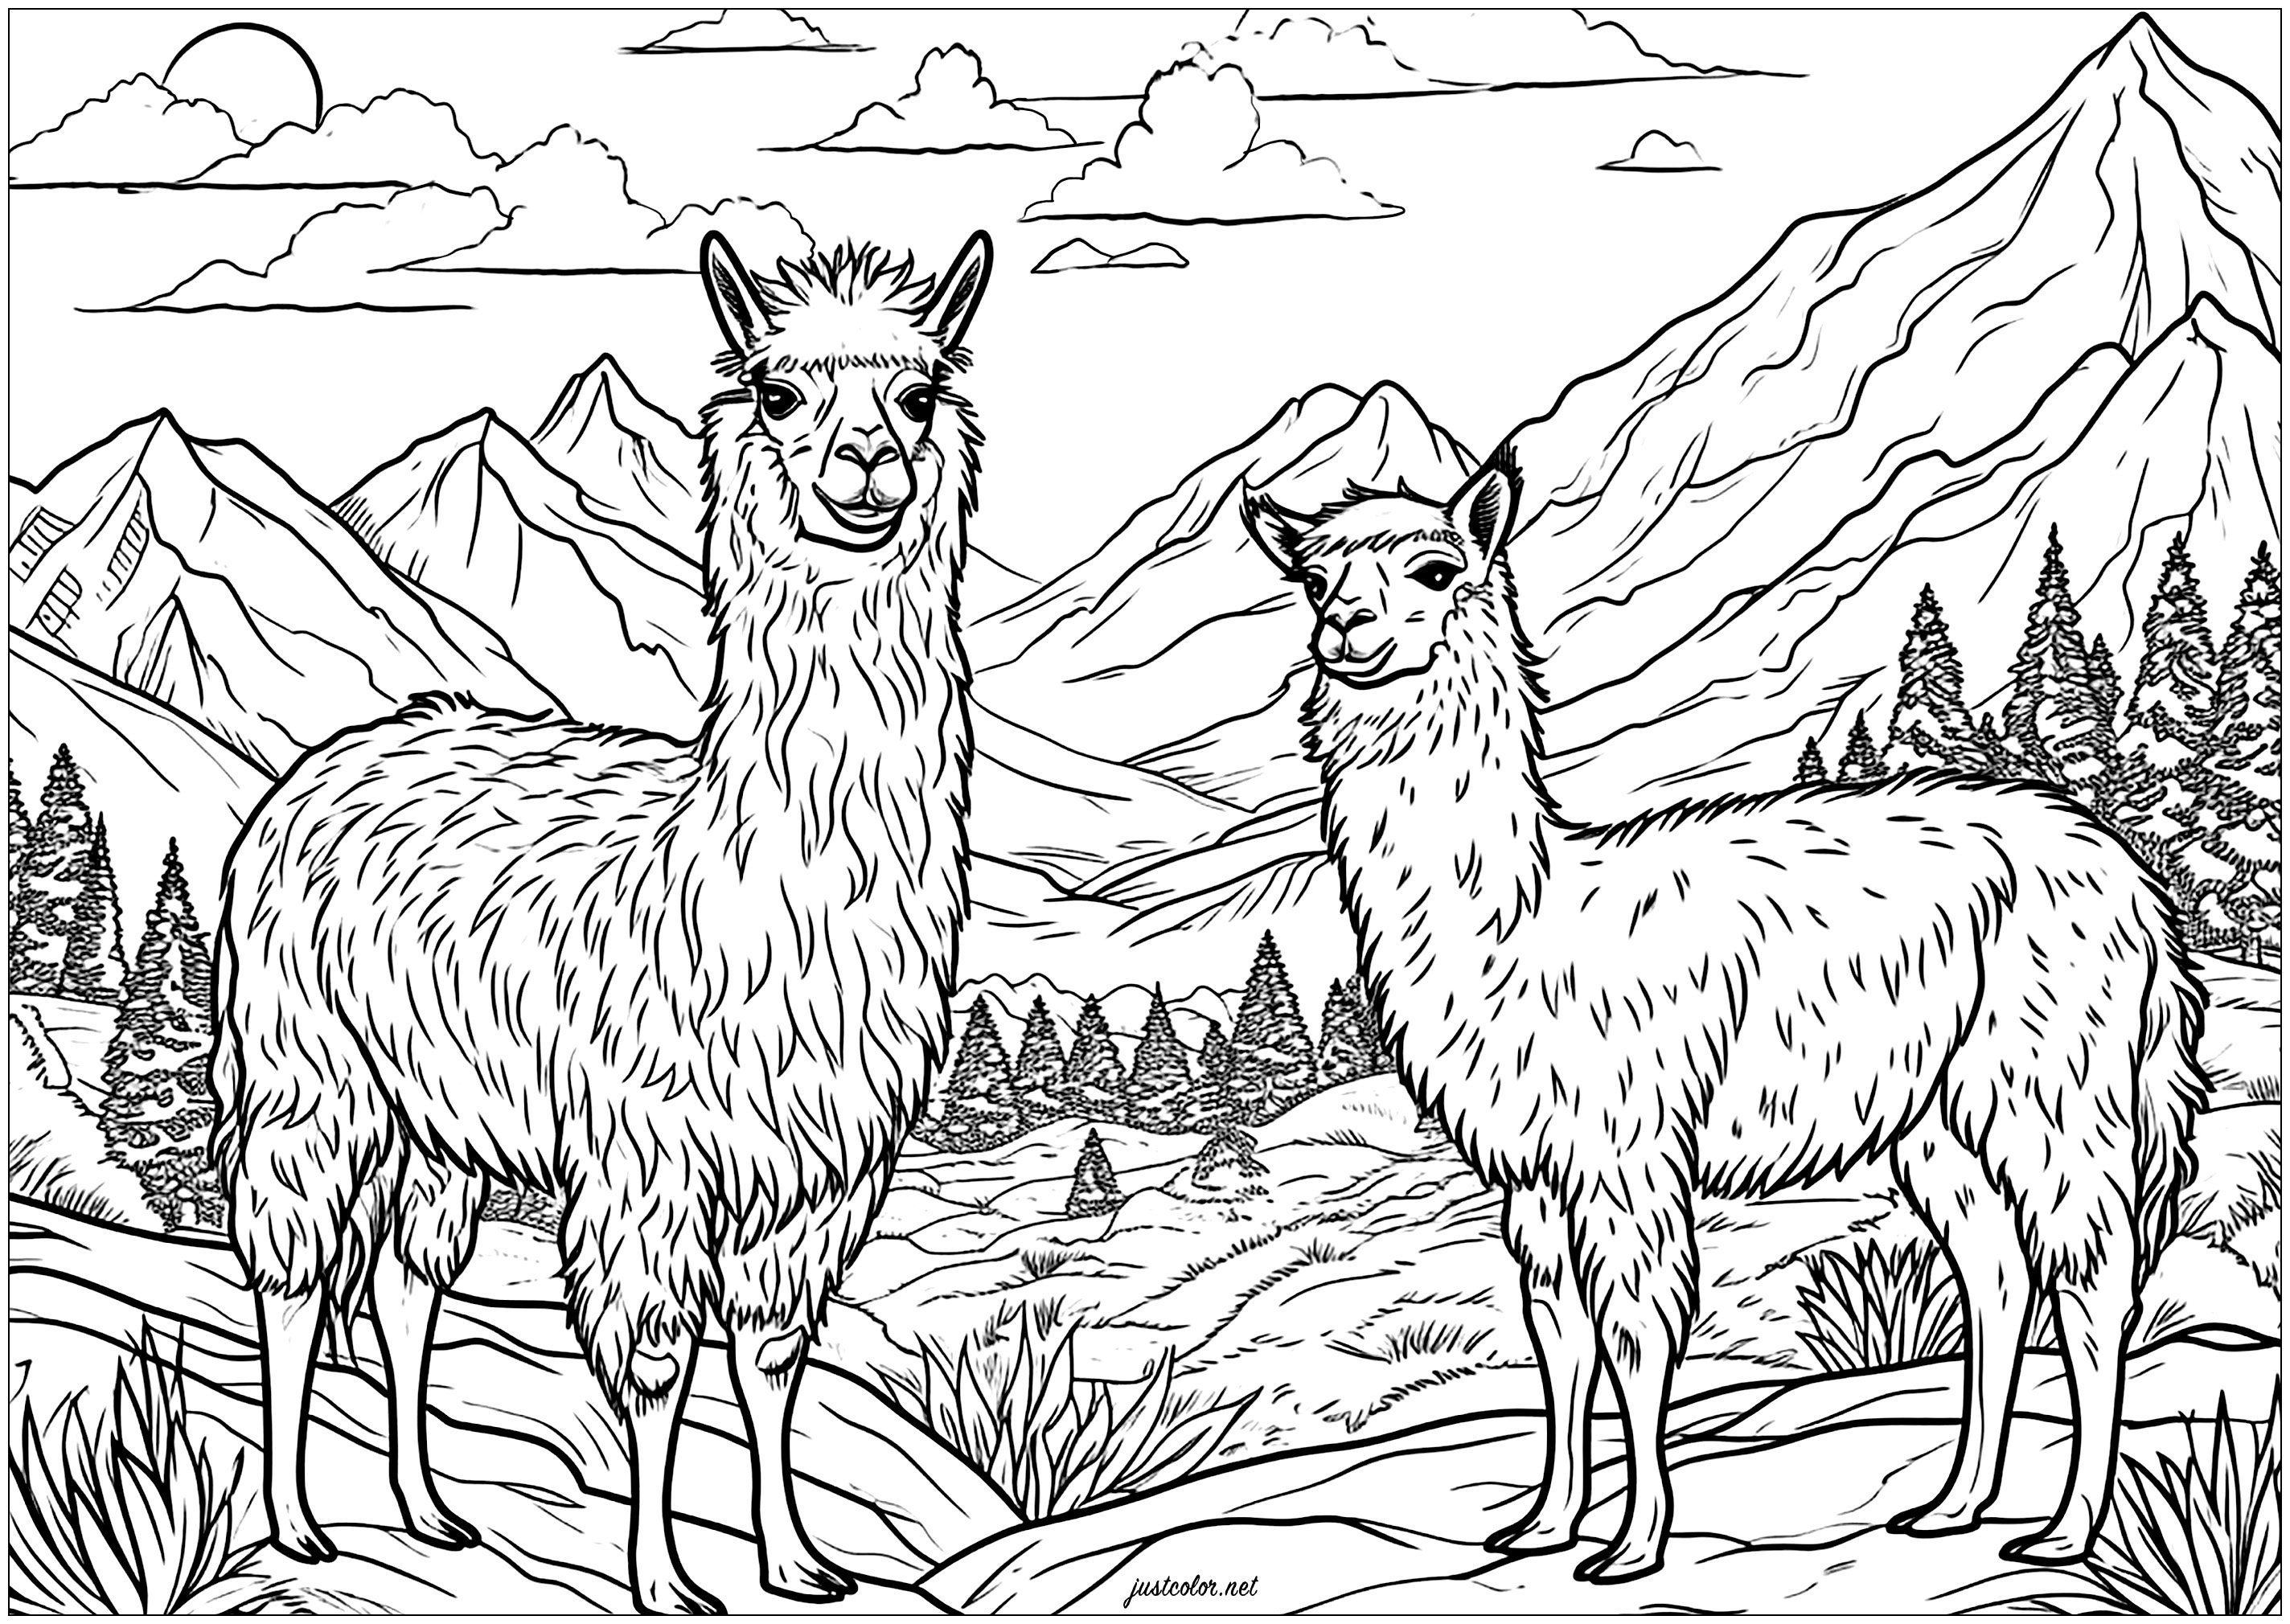 Deux lamas dans les montagnes, à l'allure très sérieuse